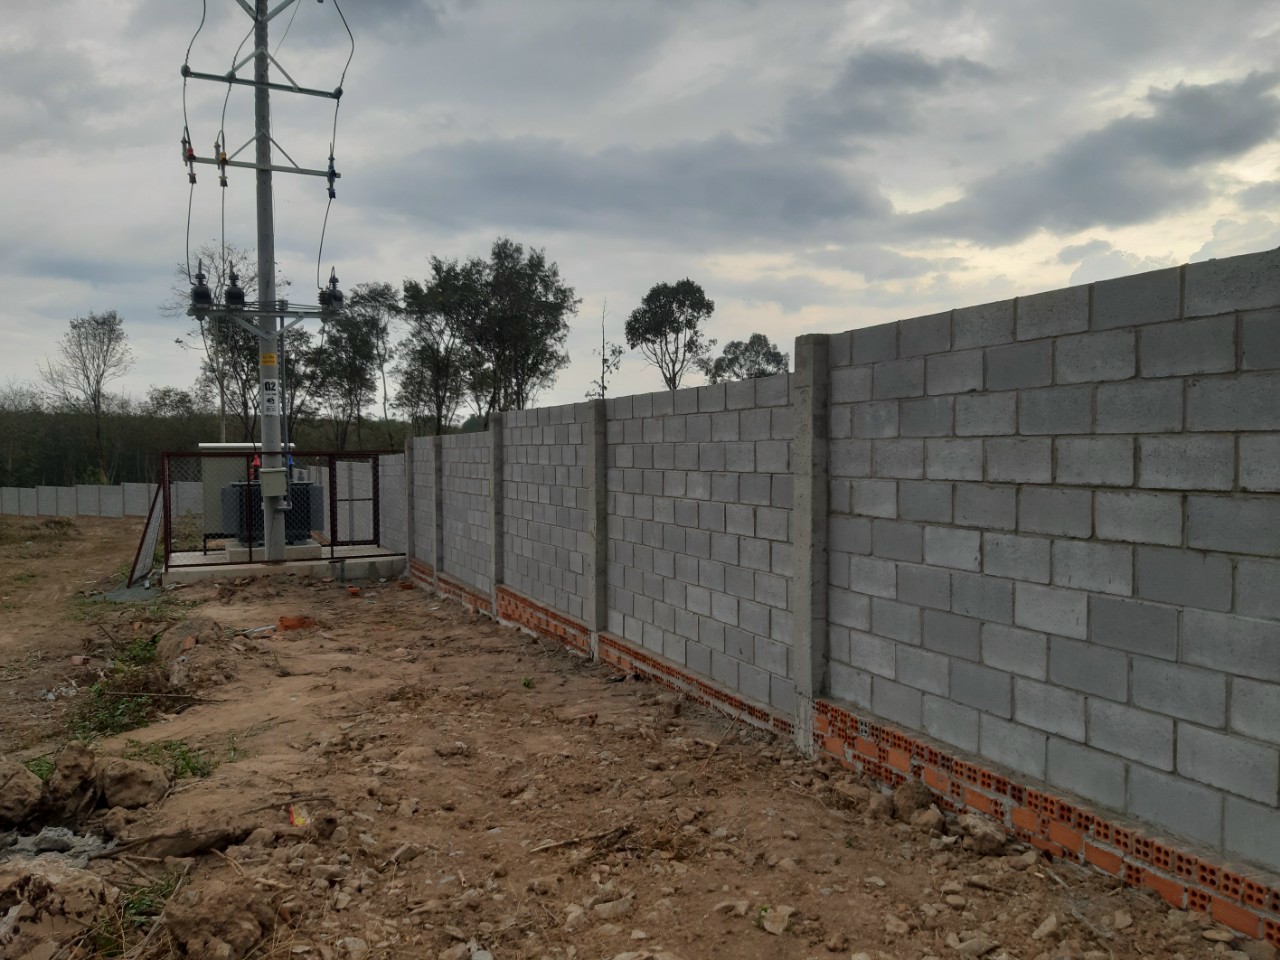 Gạch block xây tường rào